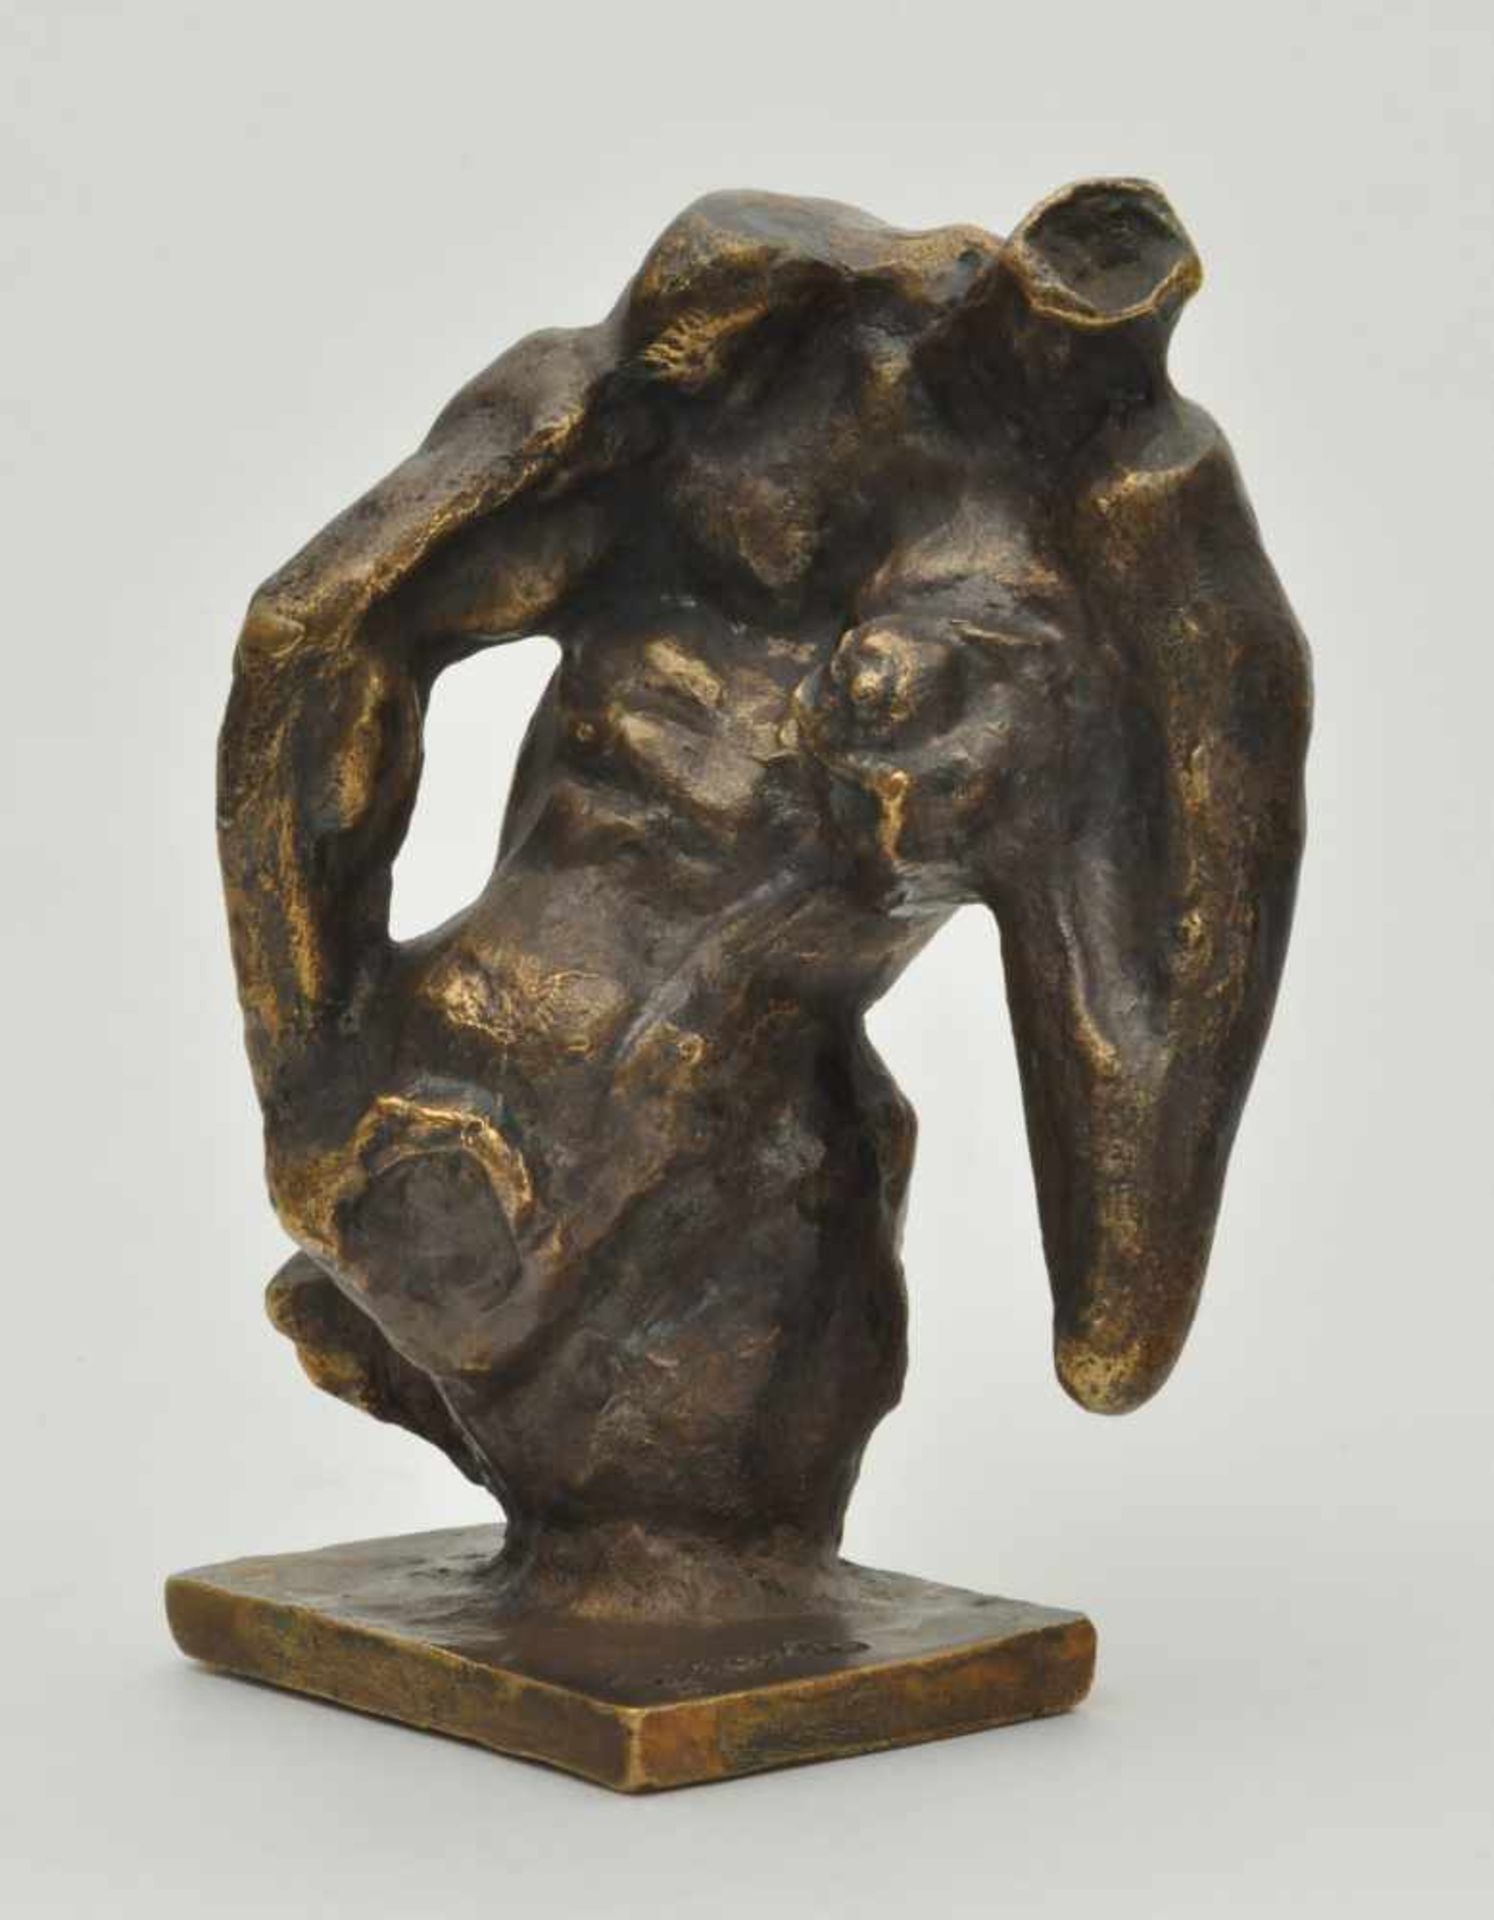 Neiswestny, Ernst Jossifowitsch (1925 Jekaterinenburg - 2016 New York) "Figur", Bronze, H. 19,0